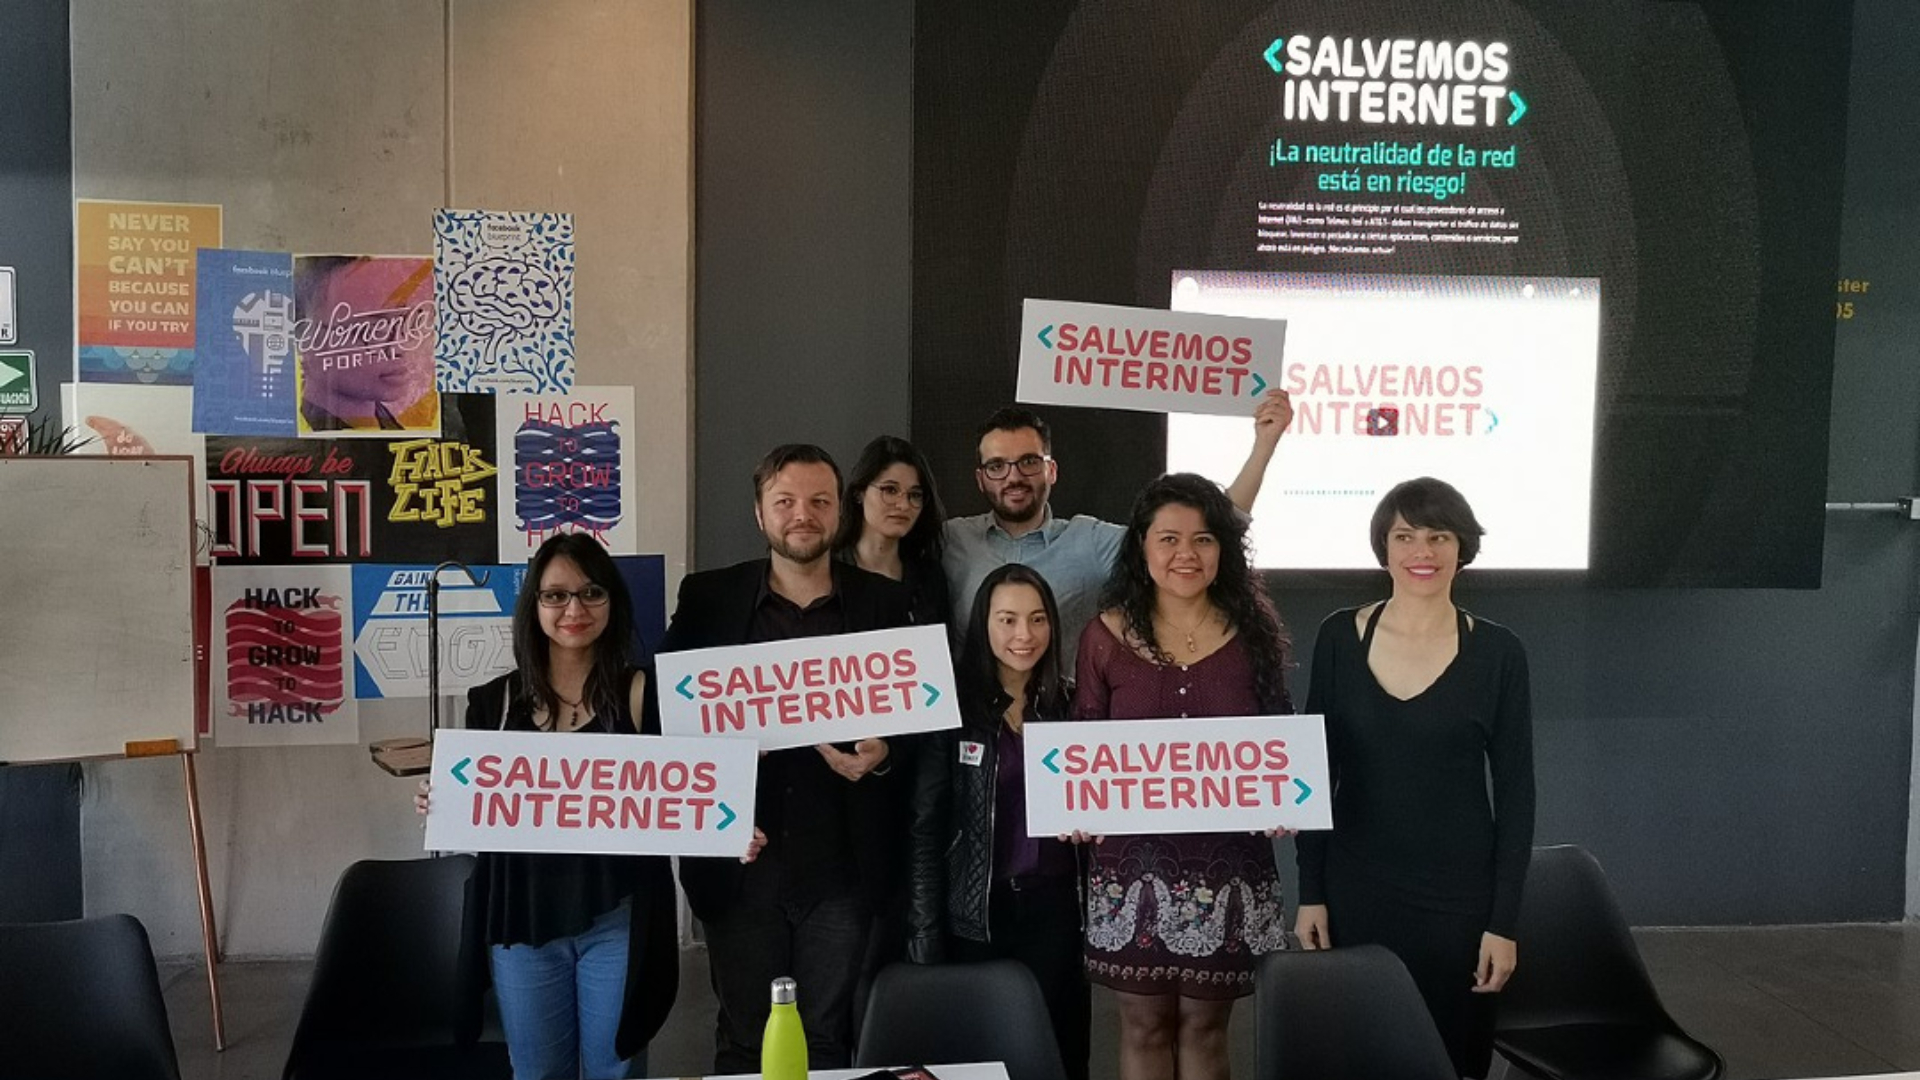 Las organizaciones consiguieron un "histórico fallo" en defensa de la neutralidad de la red en México (Foto: Cortesía R3D en defensa de los derechos digitales)